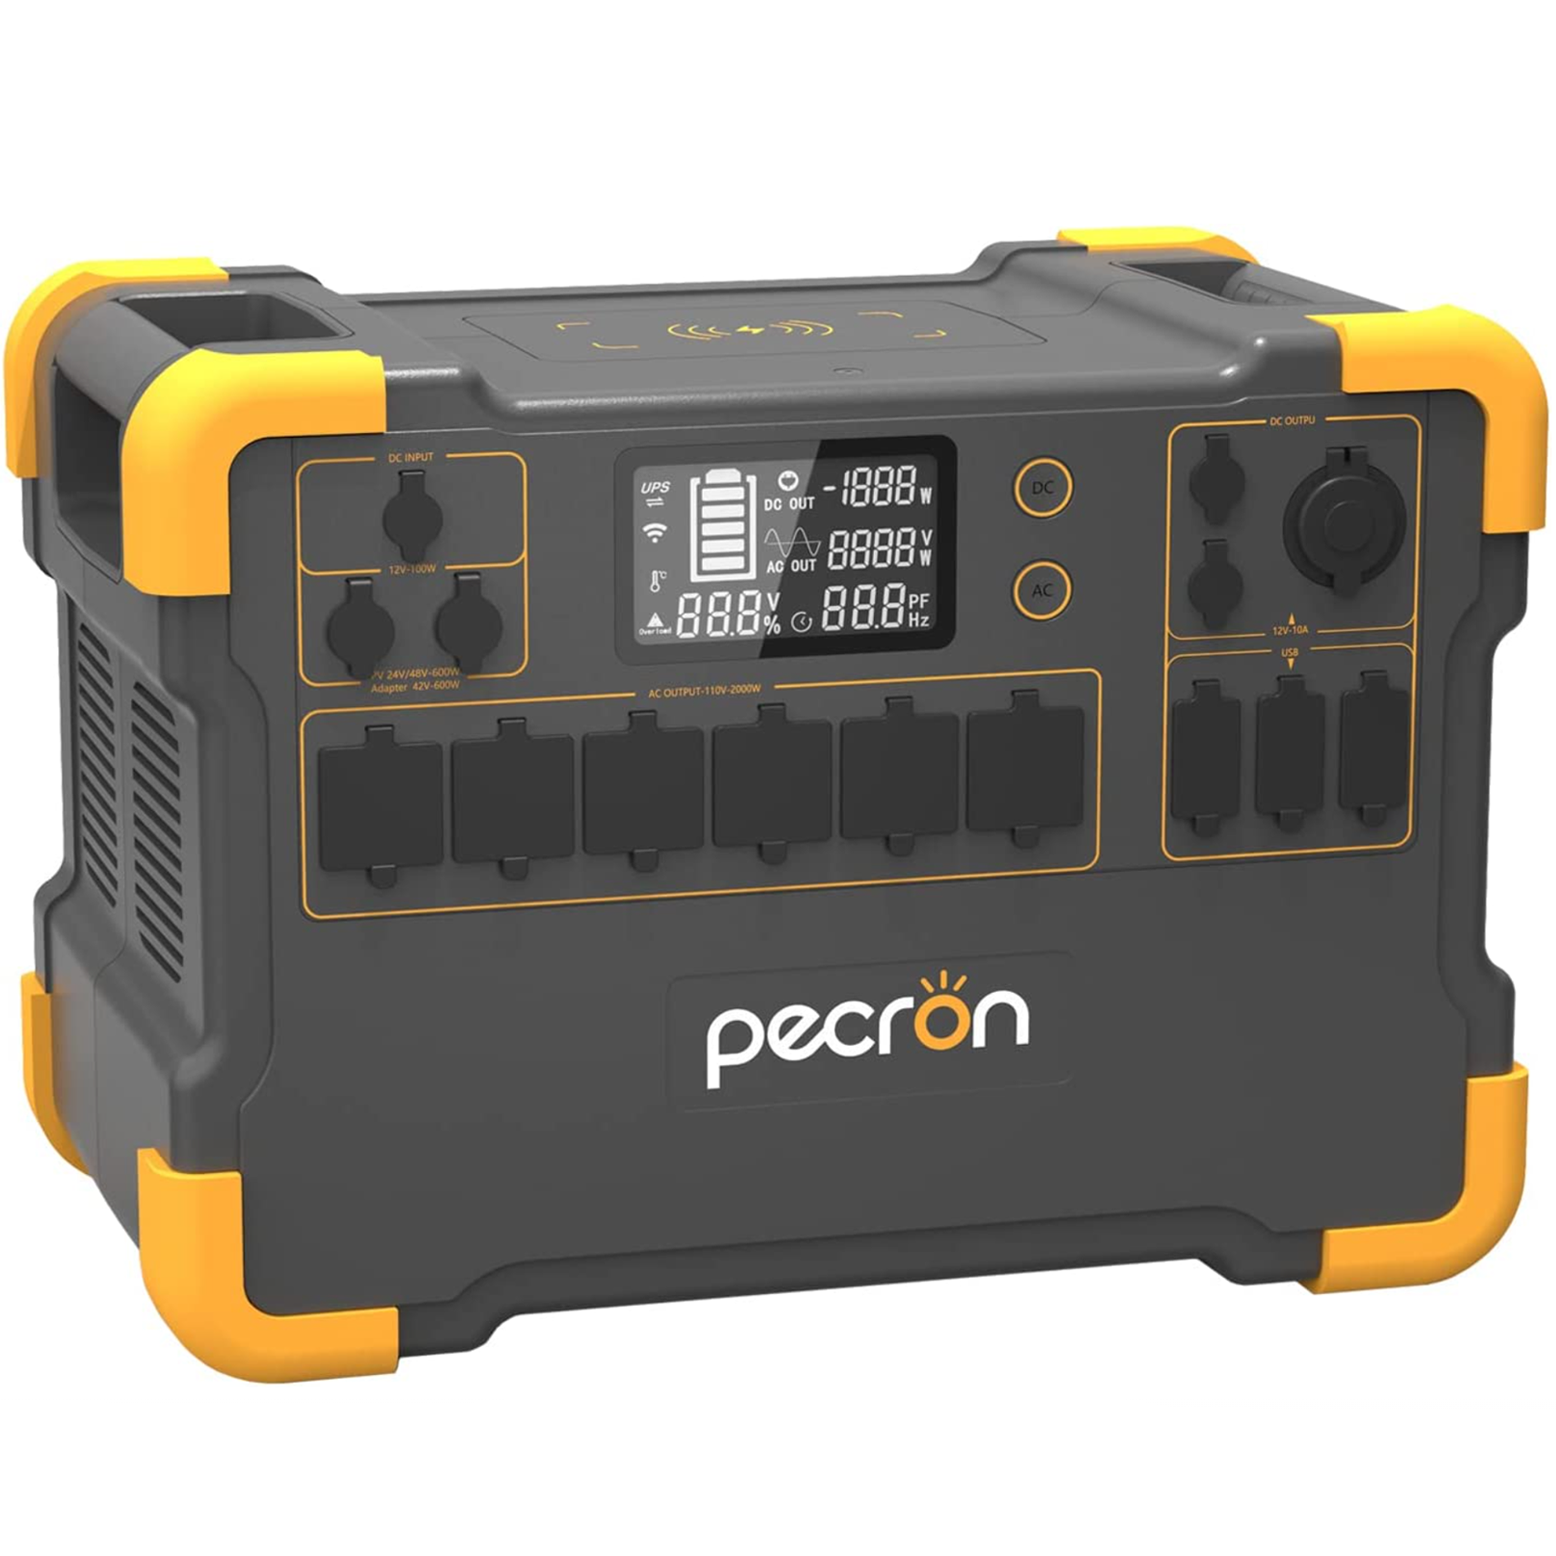 Pecron E3000